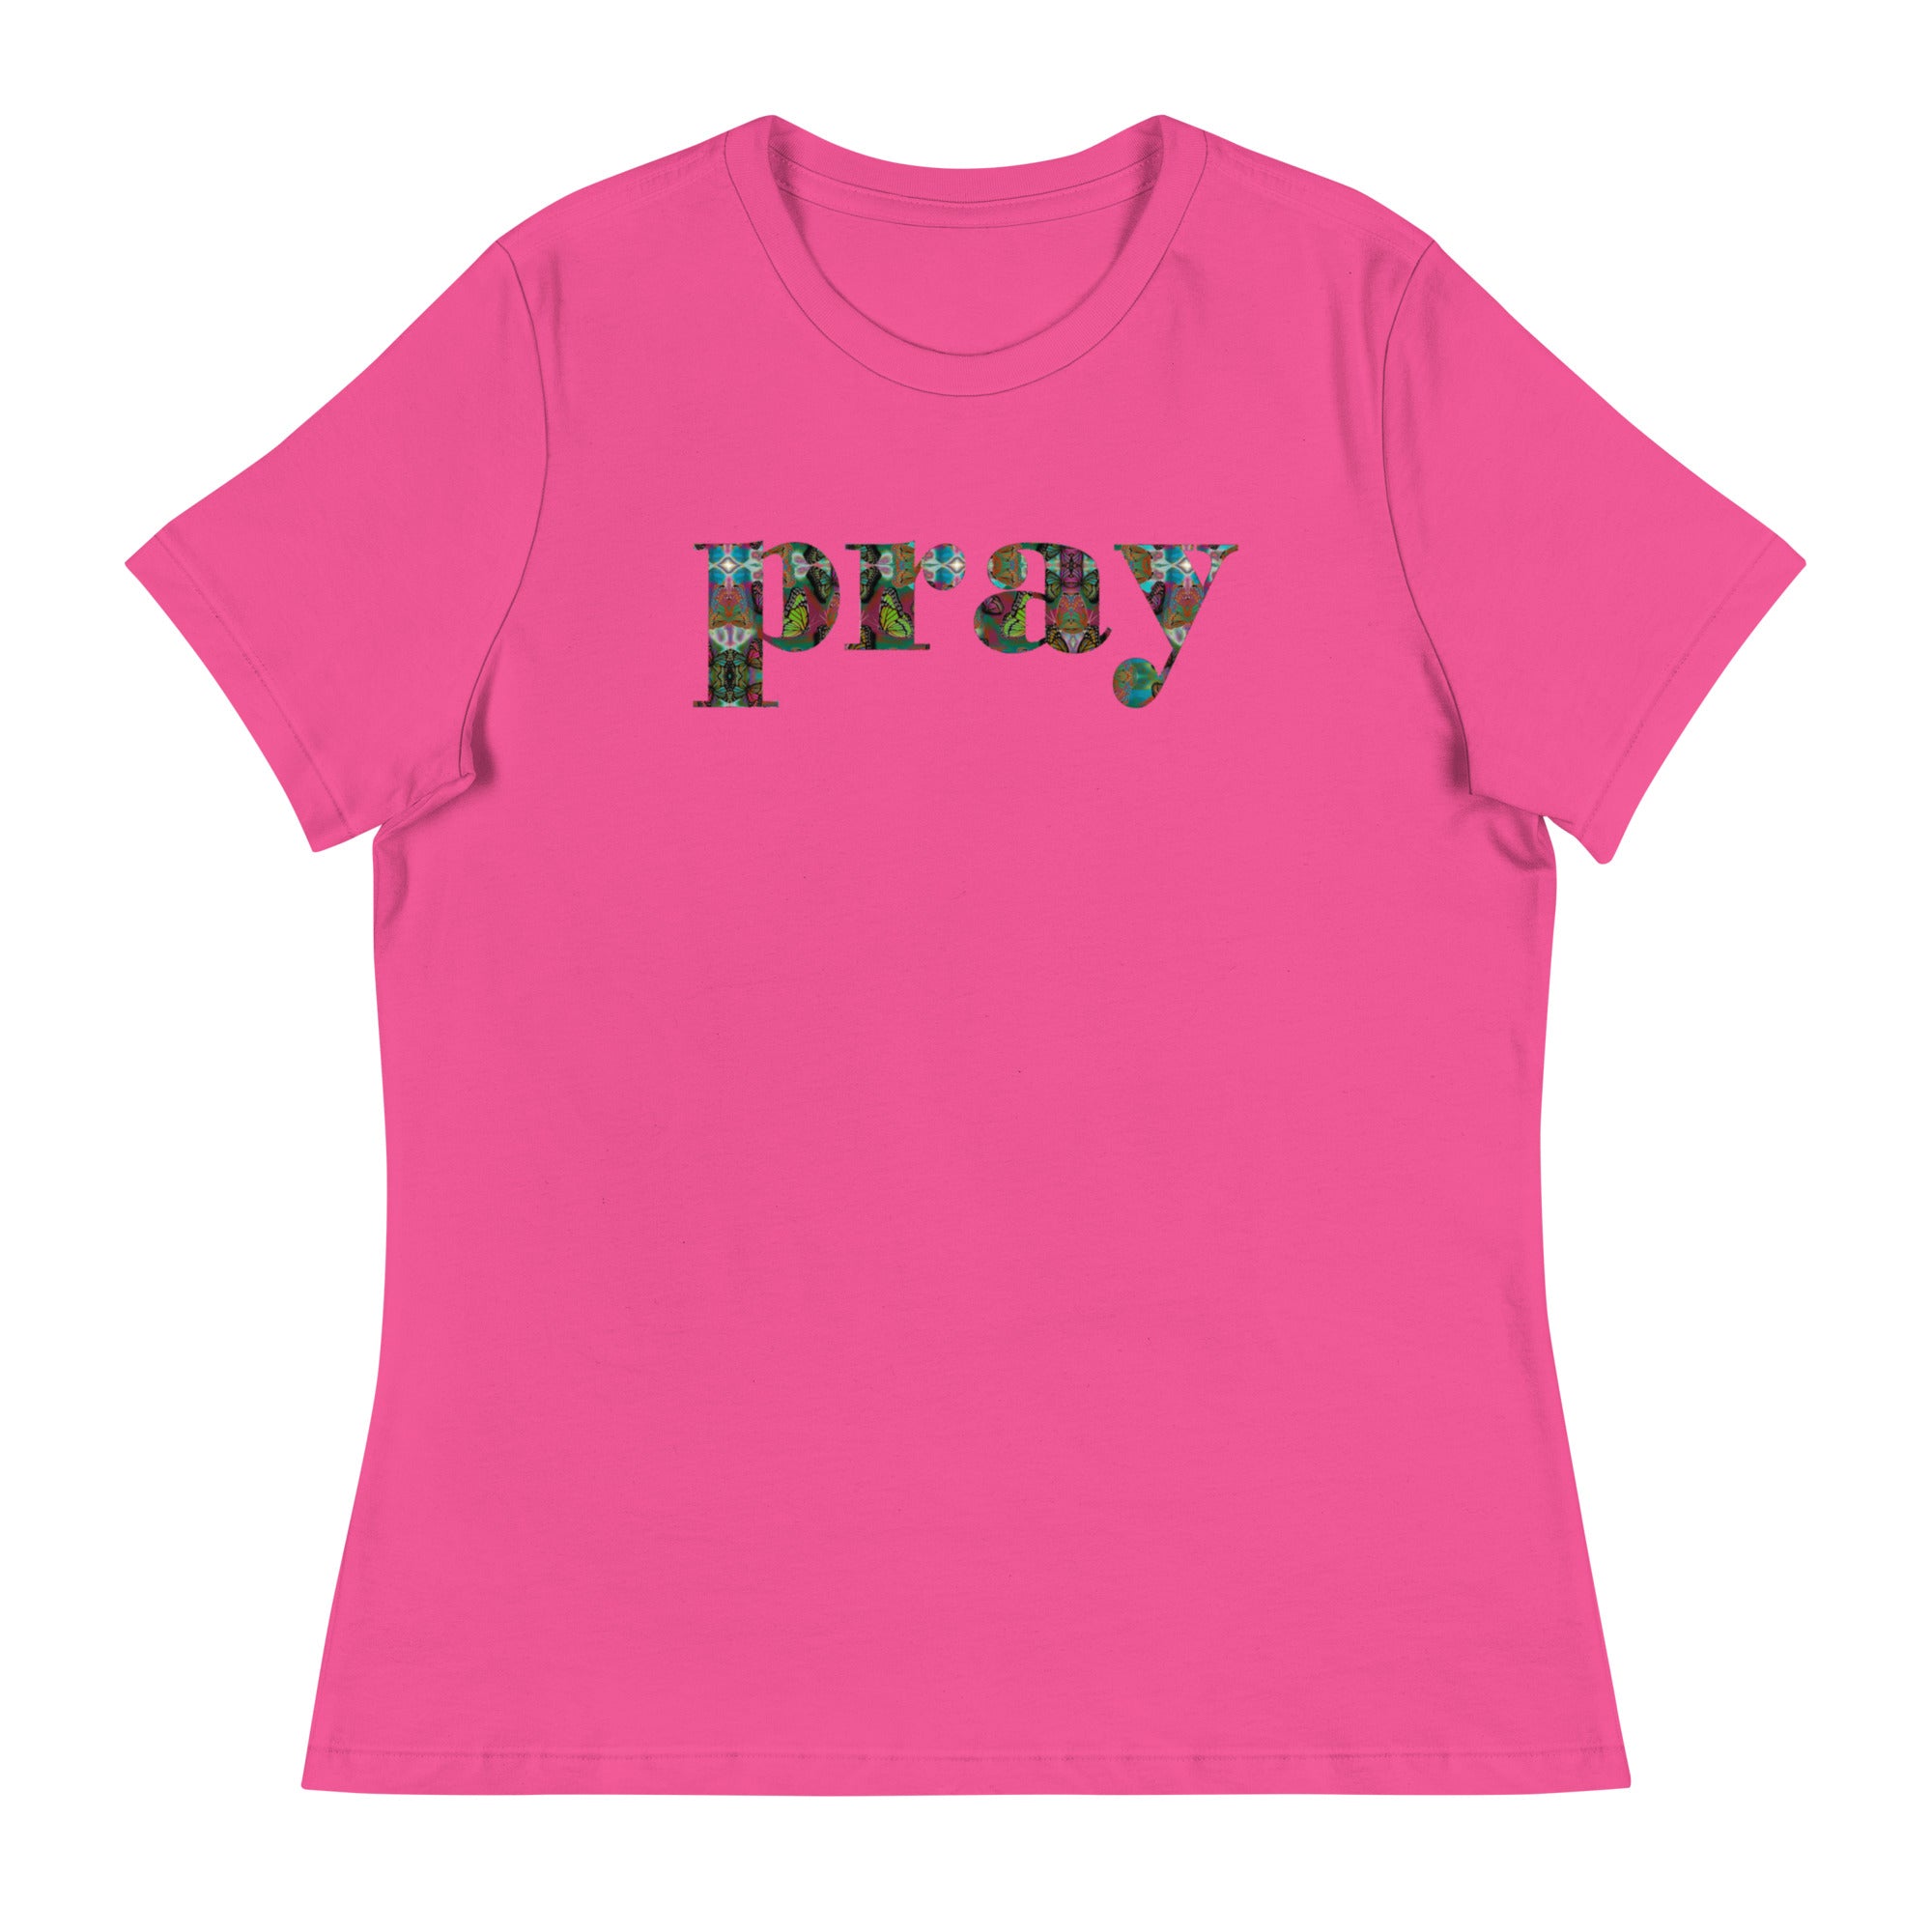 PRAY ~ Women's Butterfly Word Art Graphic T-Shirt, Short Sleeve Top